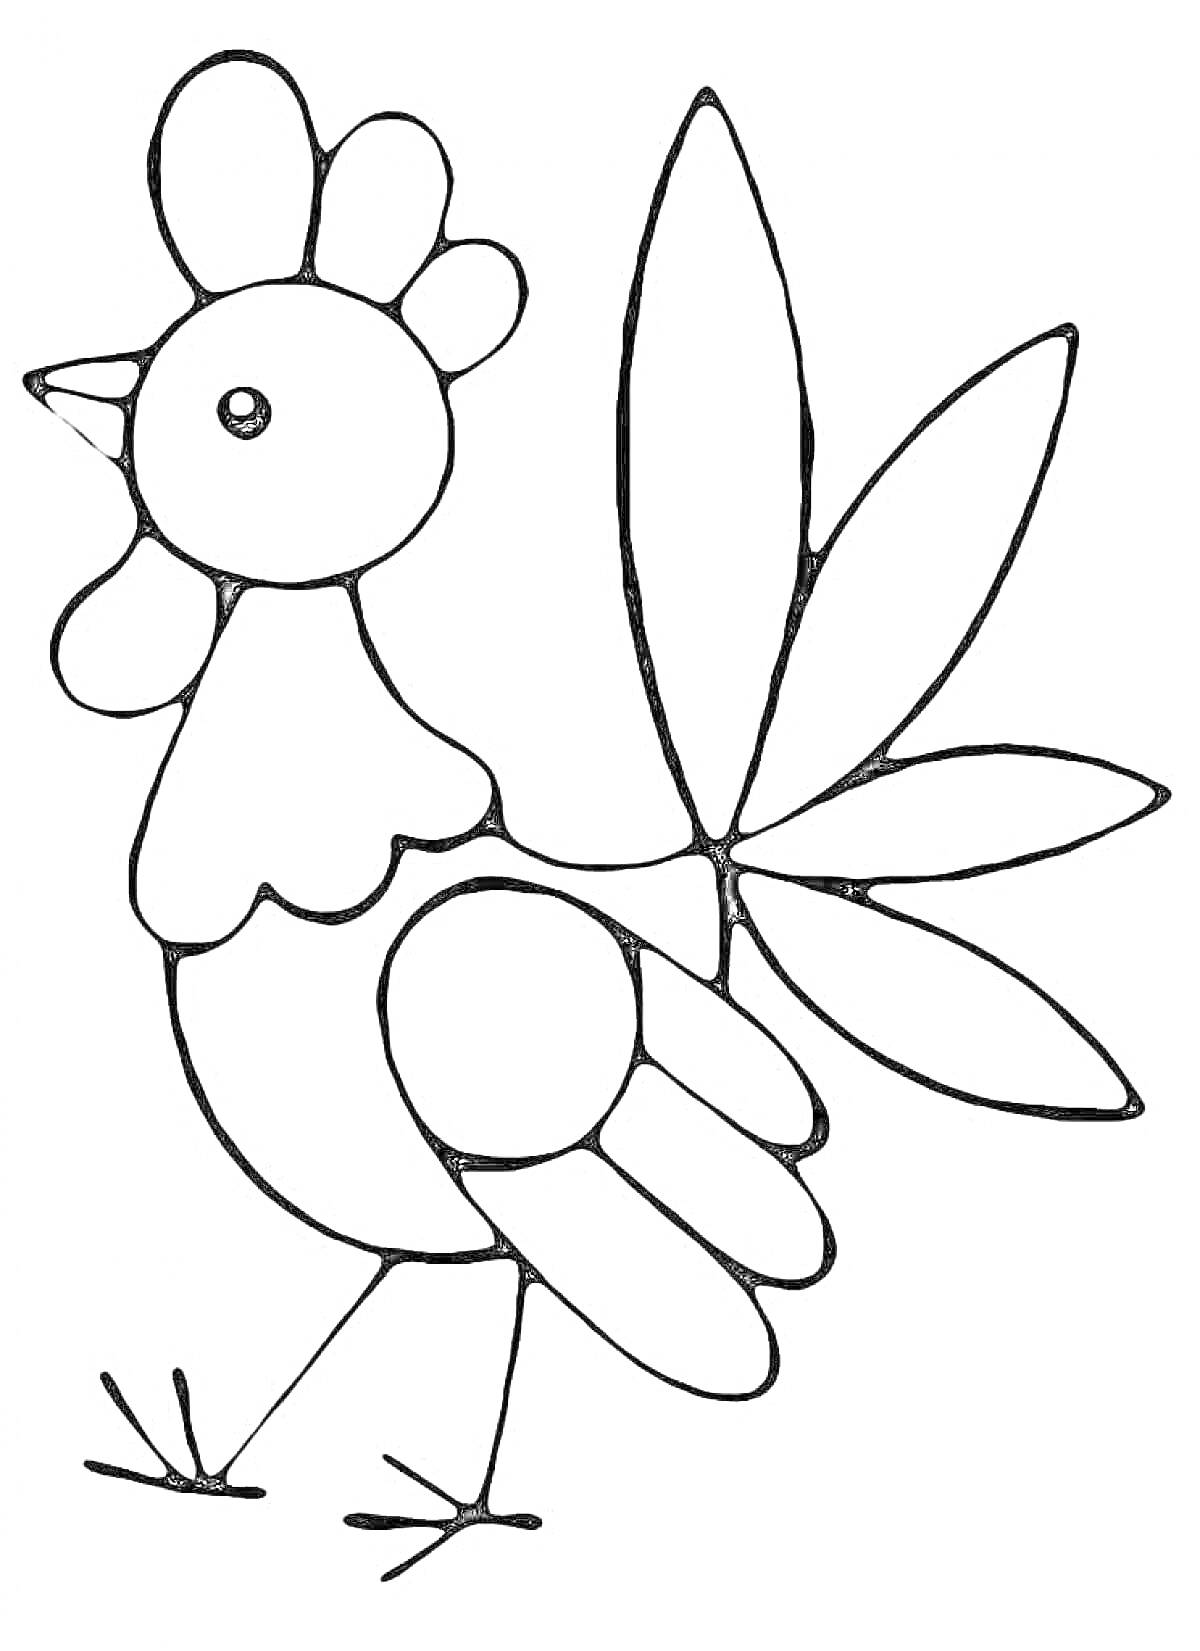 Раскраска Петушок с хвостом в форме листьев и клювом, повернутым вправо